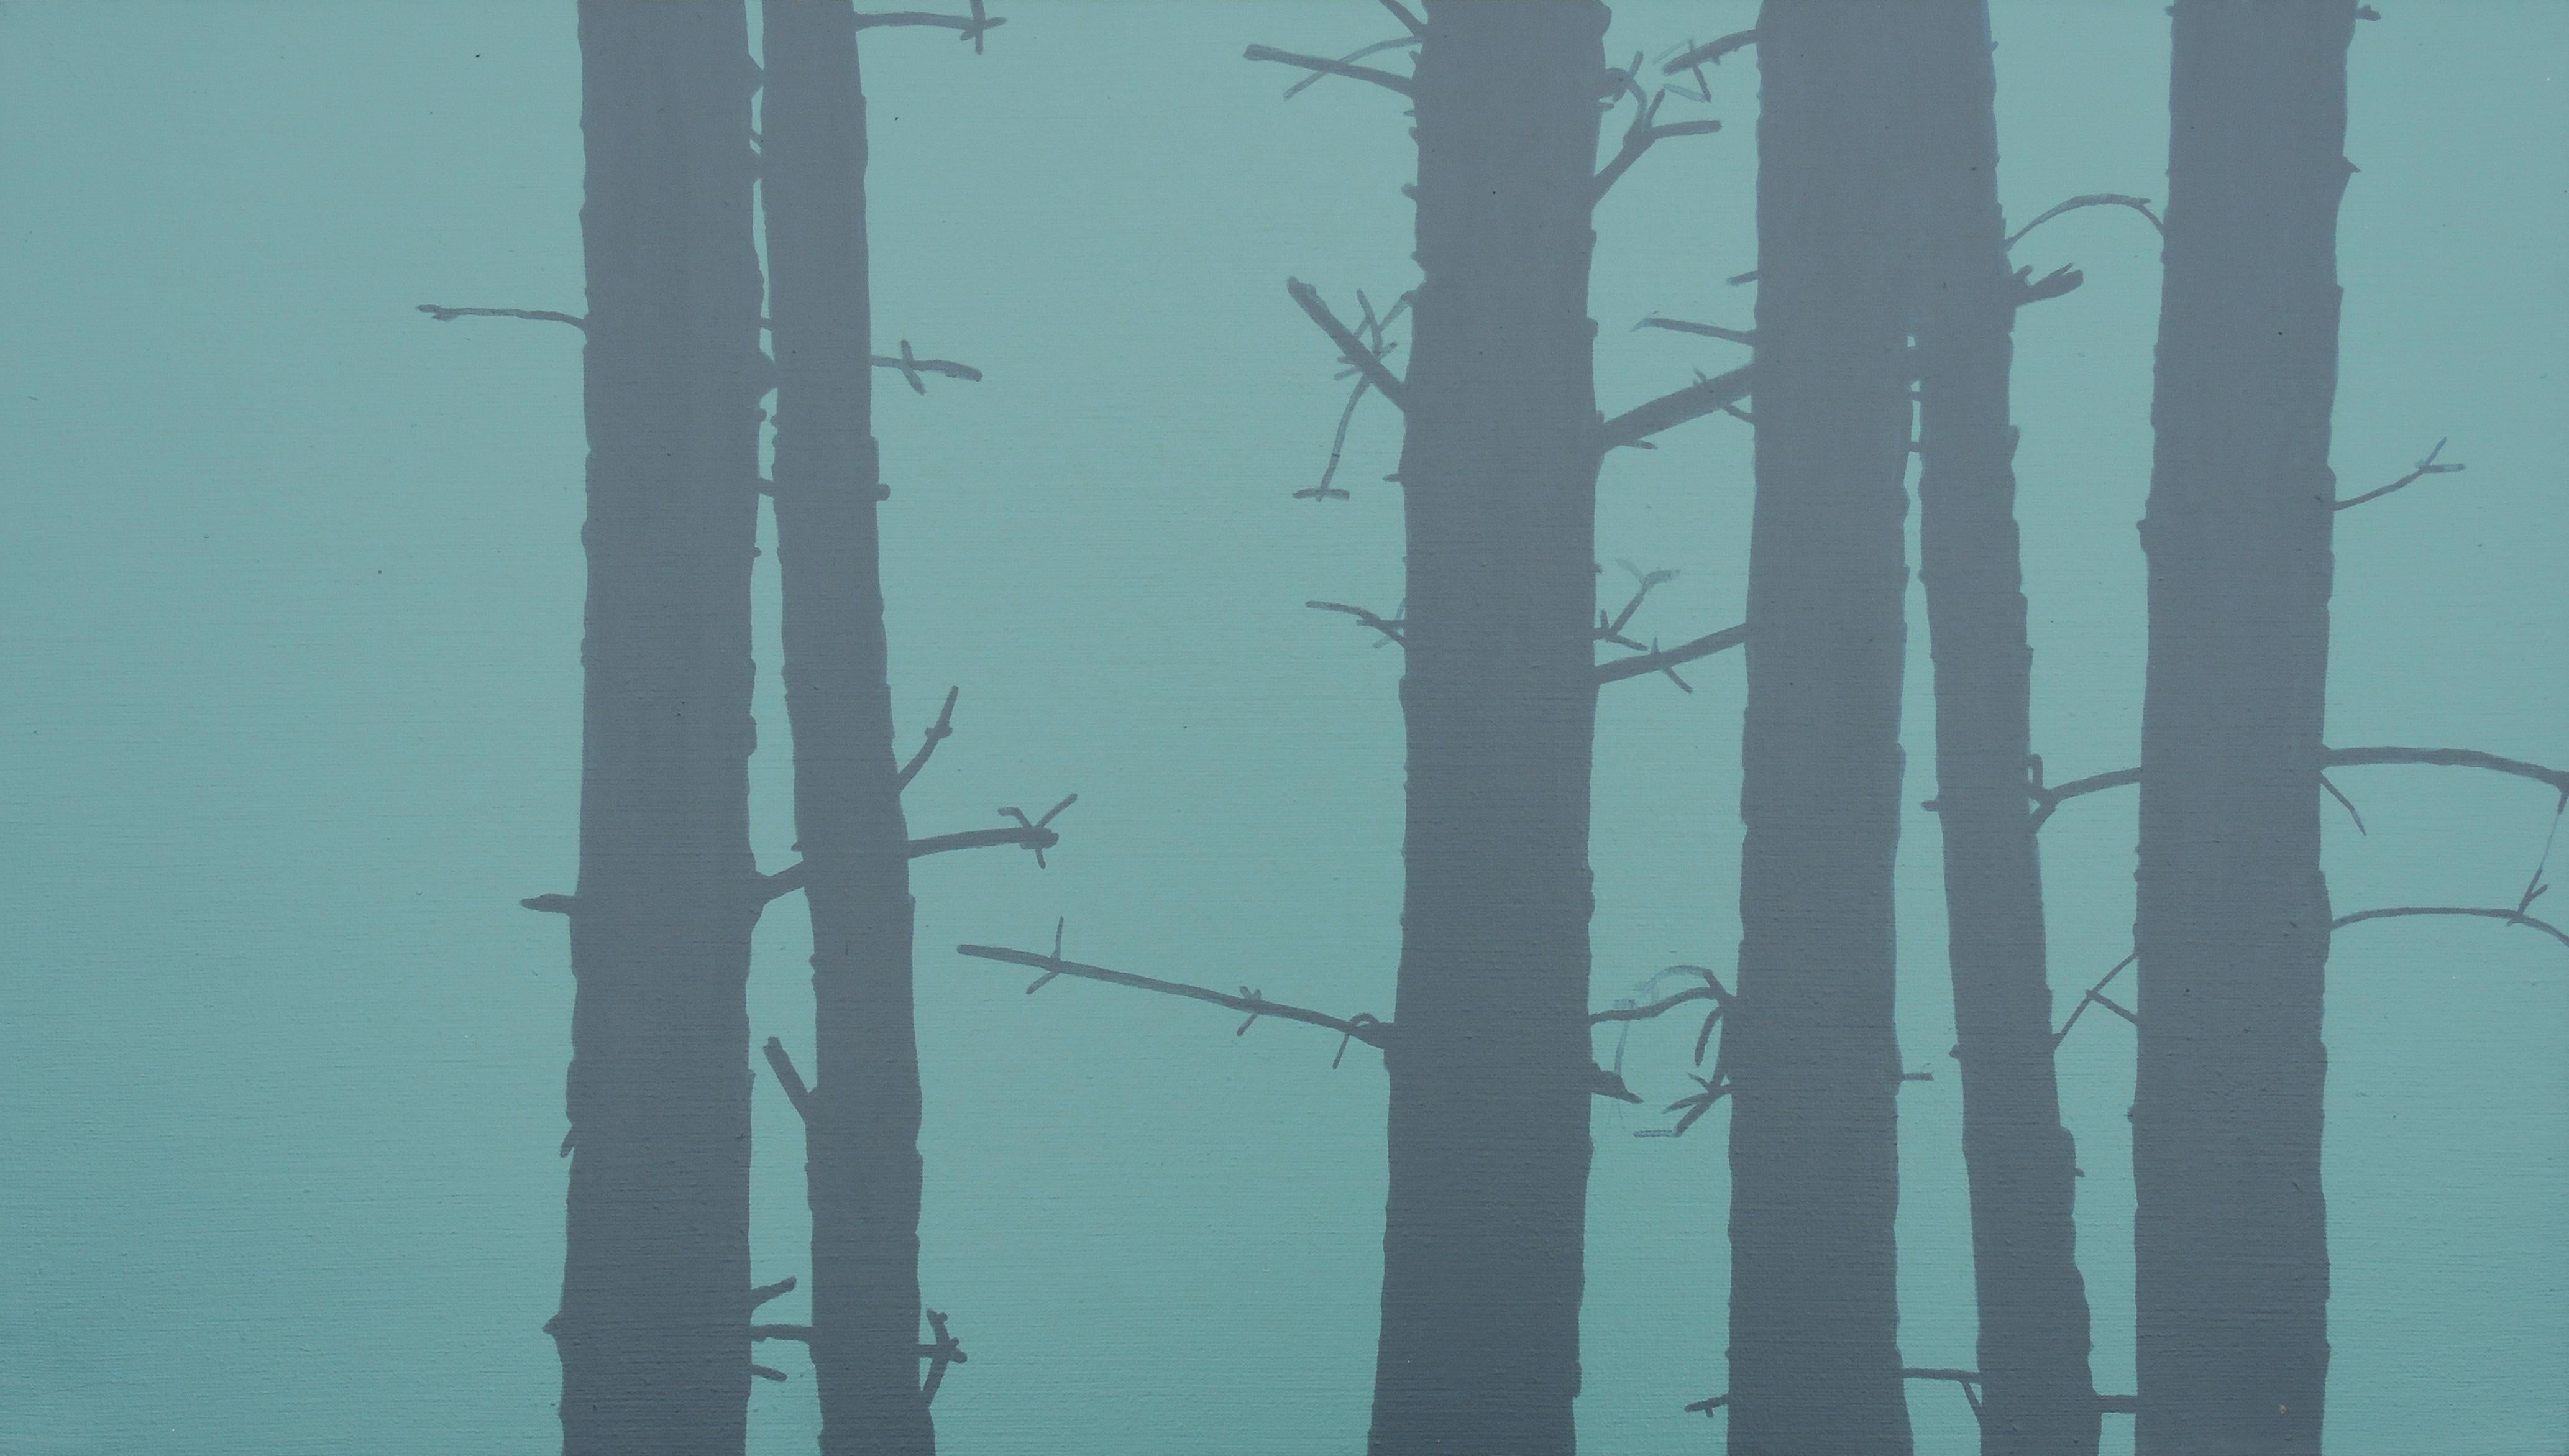 Trees 23 juin 16:22, peinture de paysage moderne, minimaliste, abstraite, forêt